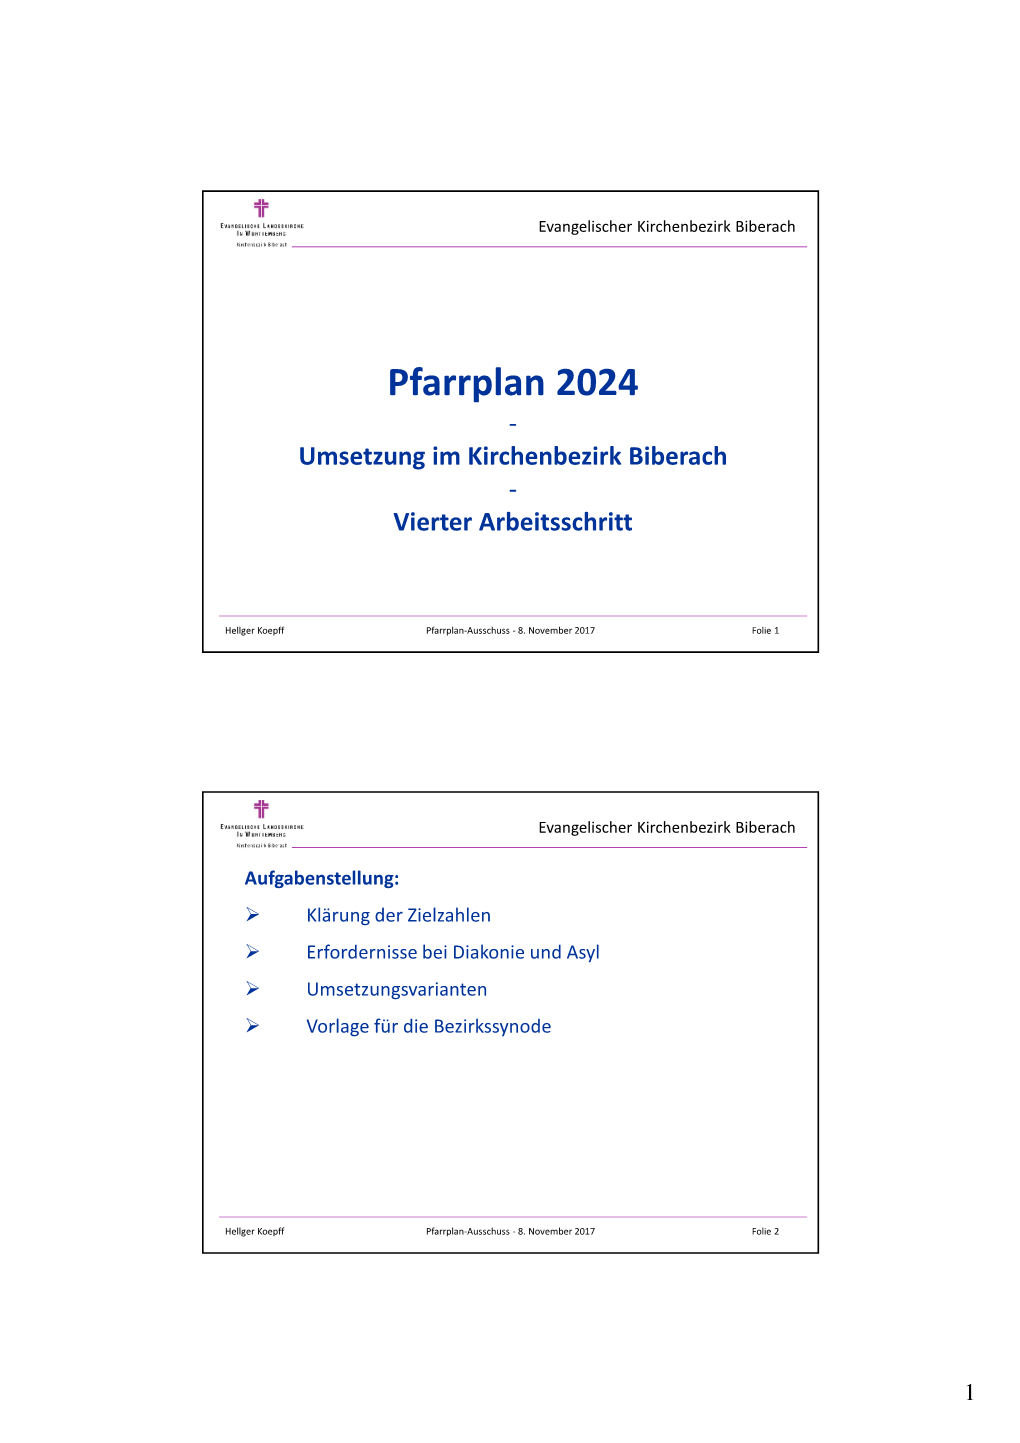 Pfarrplan 2024 - Umsetzung Im Kirchenbezirk Biberach - Vierter Arbeitsschritt